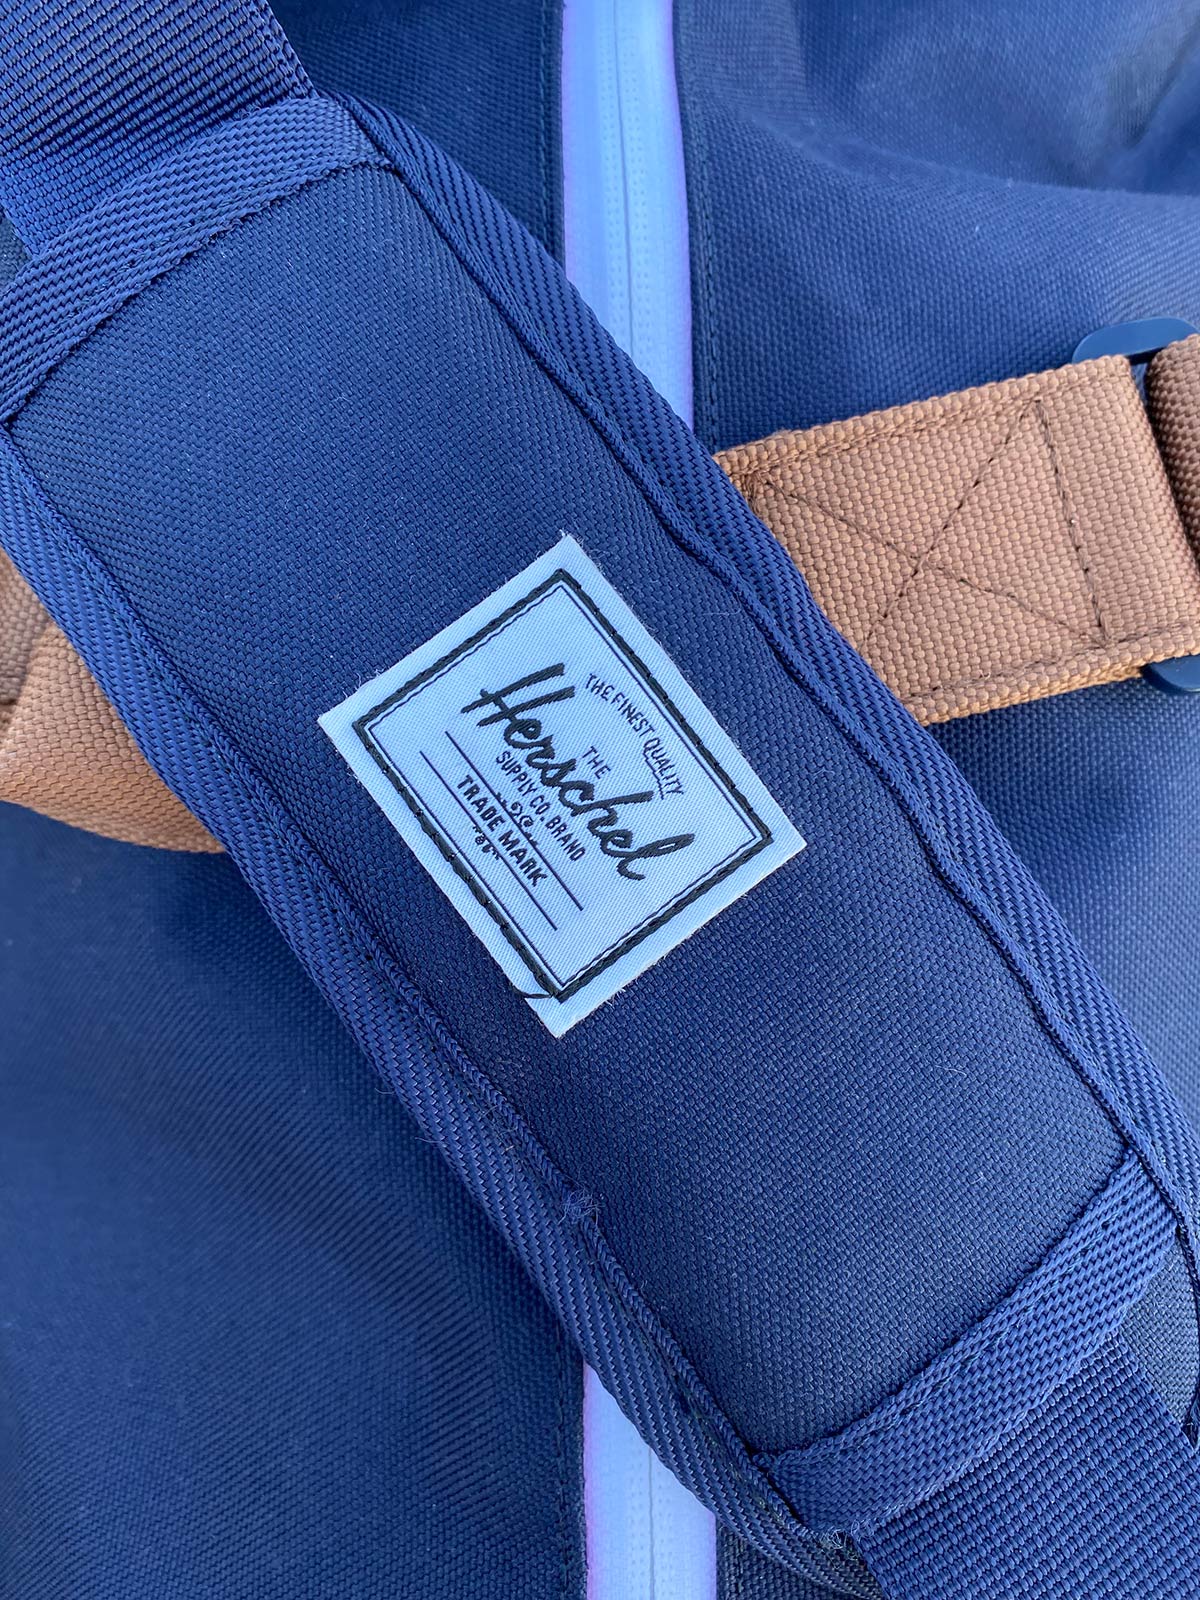 Herschel Novel Duffel Bag strap logo